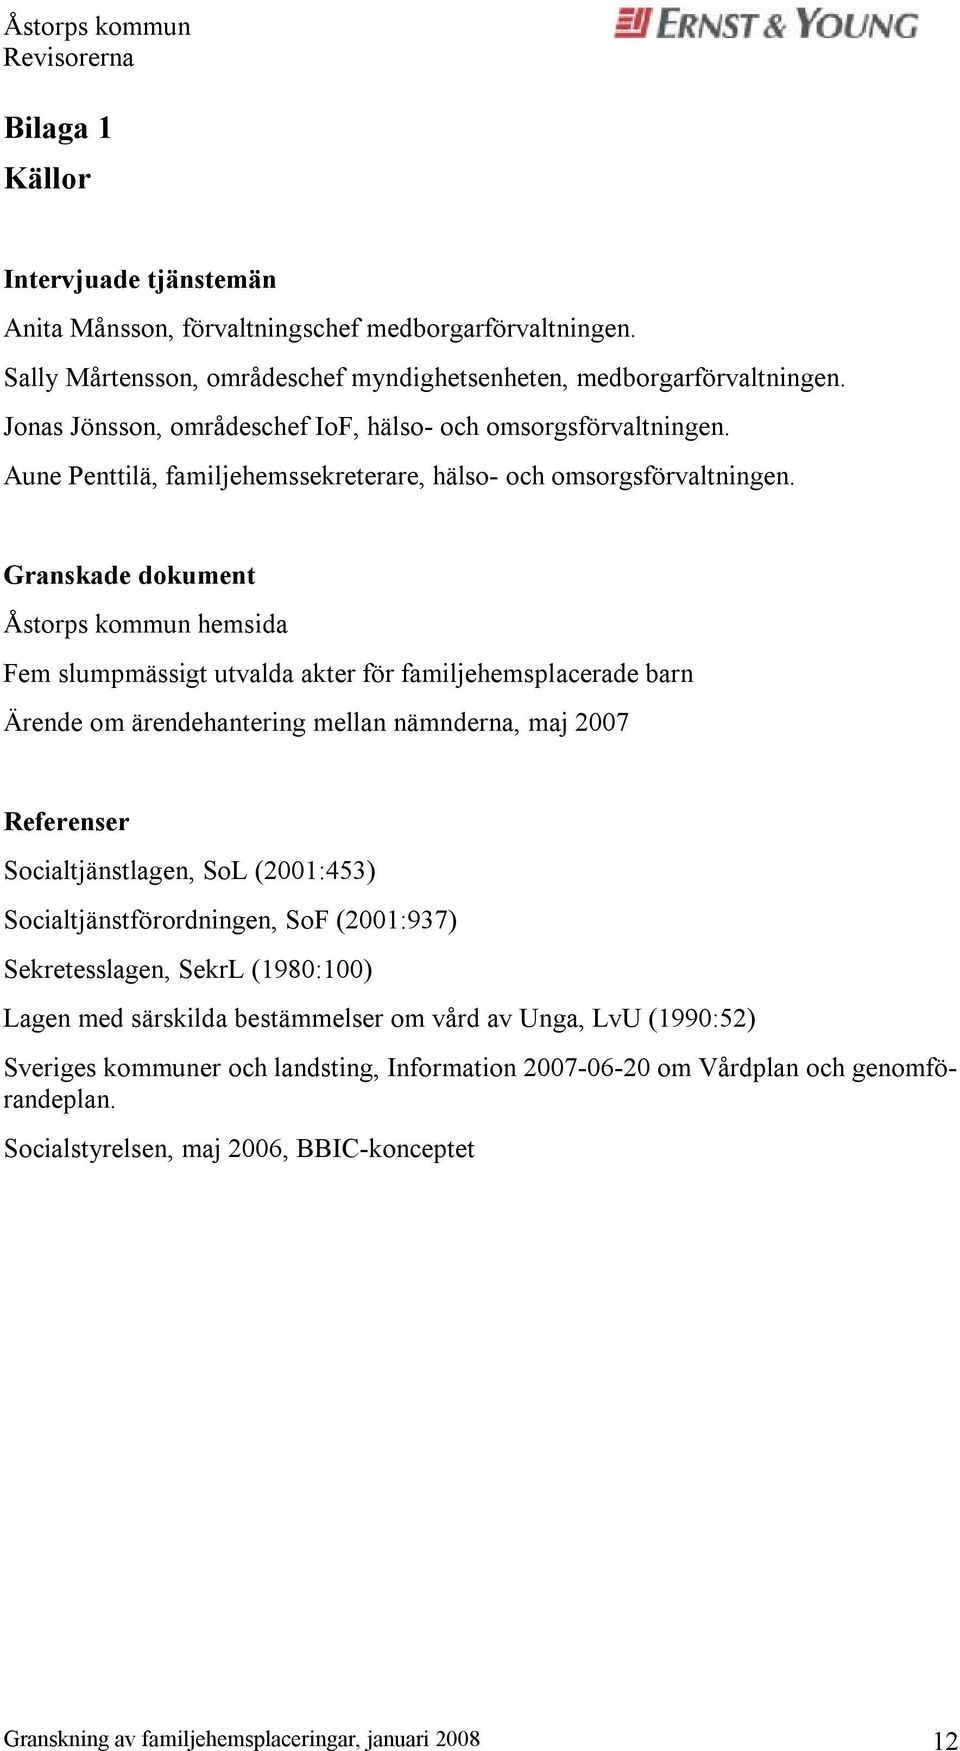 Granskade dokument Åstorps kommun hemsida Fem slumpmässigt utvalda akter för familjehemsplacerade barn Ärende om ärendehantering mellan nämnderna, maj 2007 Referenser Socialtjänstlagen, SoL